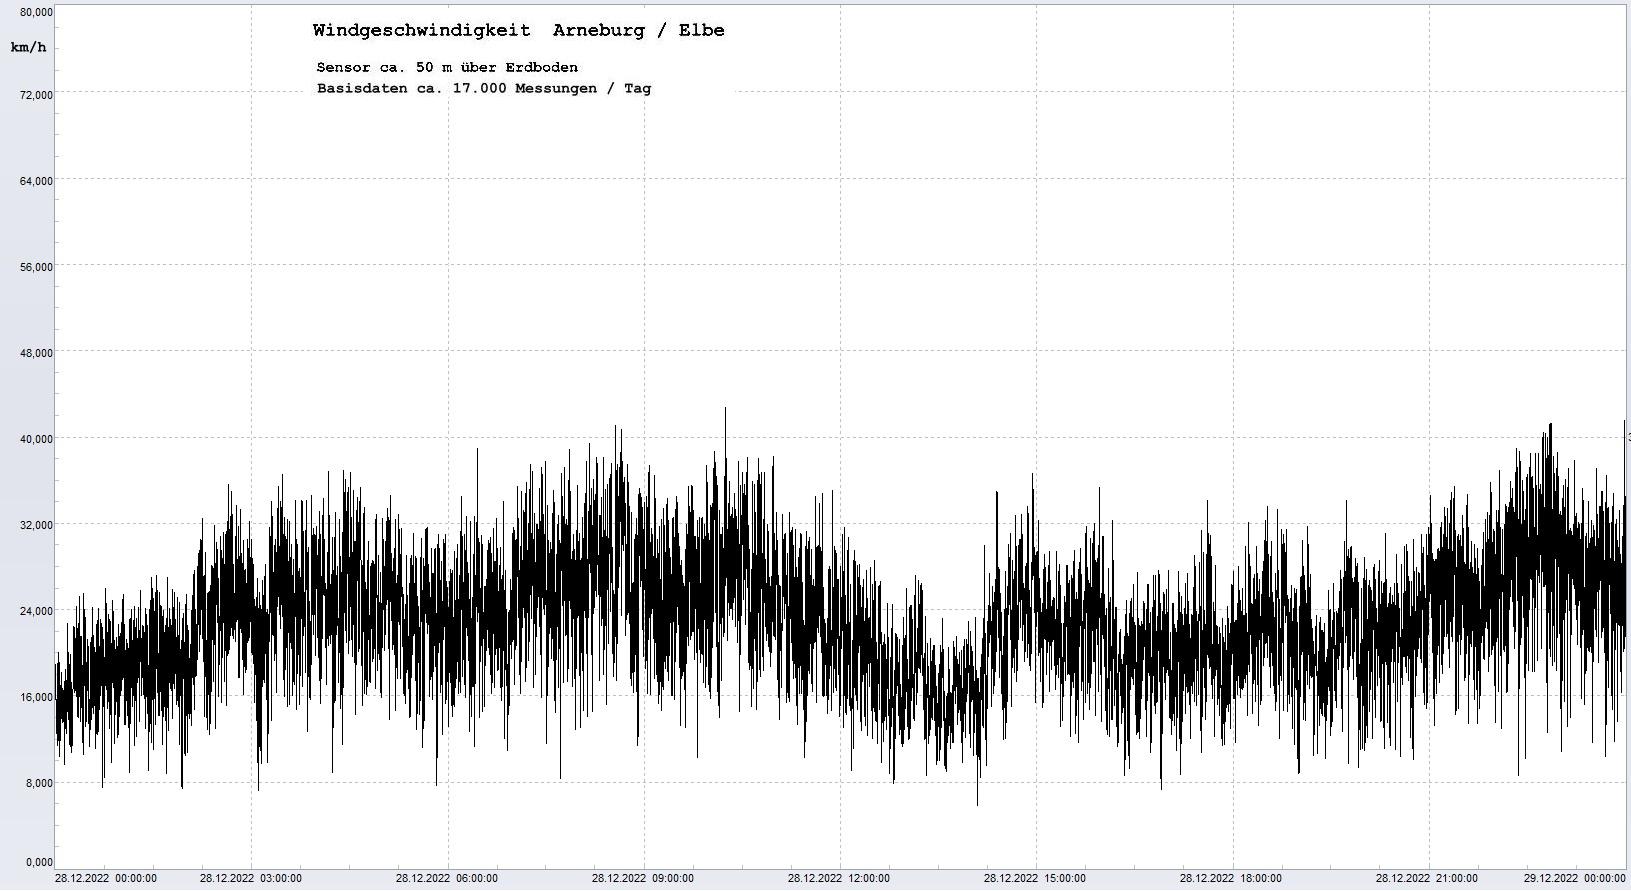 Arneburg Tages-Diagramm Winddaten, 28.12.2022
  Diagramm, Sensor auf Gebude, ca. 50 m ber Erdboden, Basis: 5s-Aufzeichnung